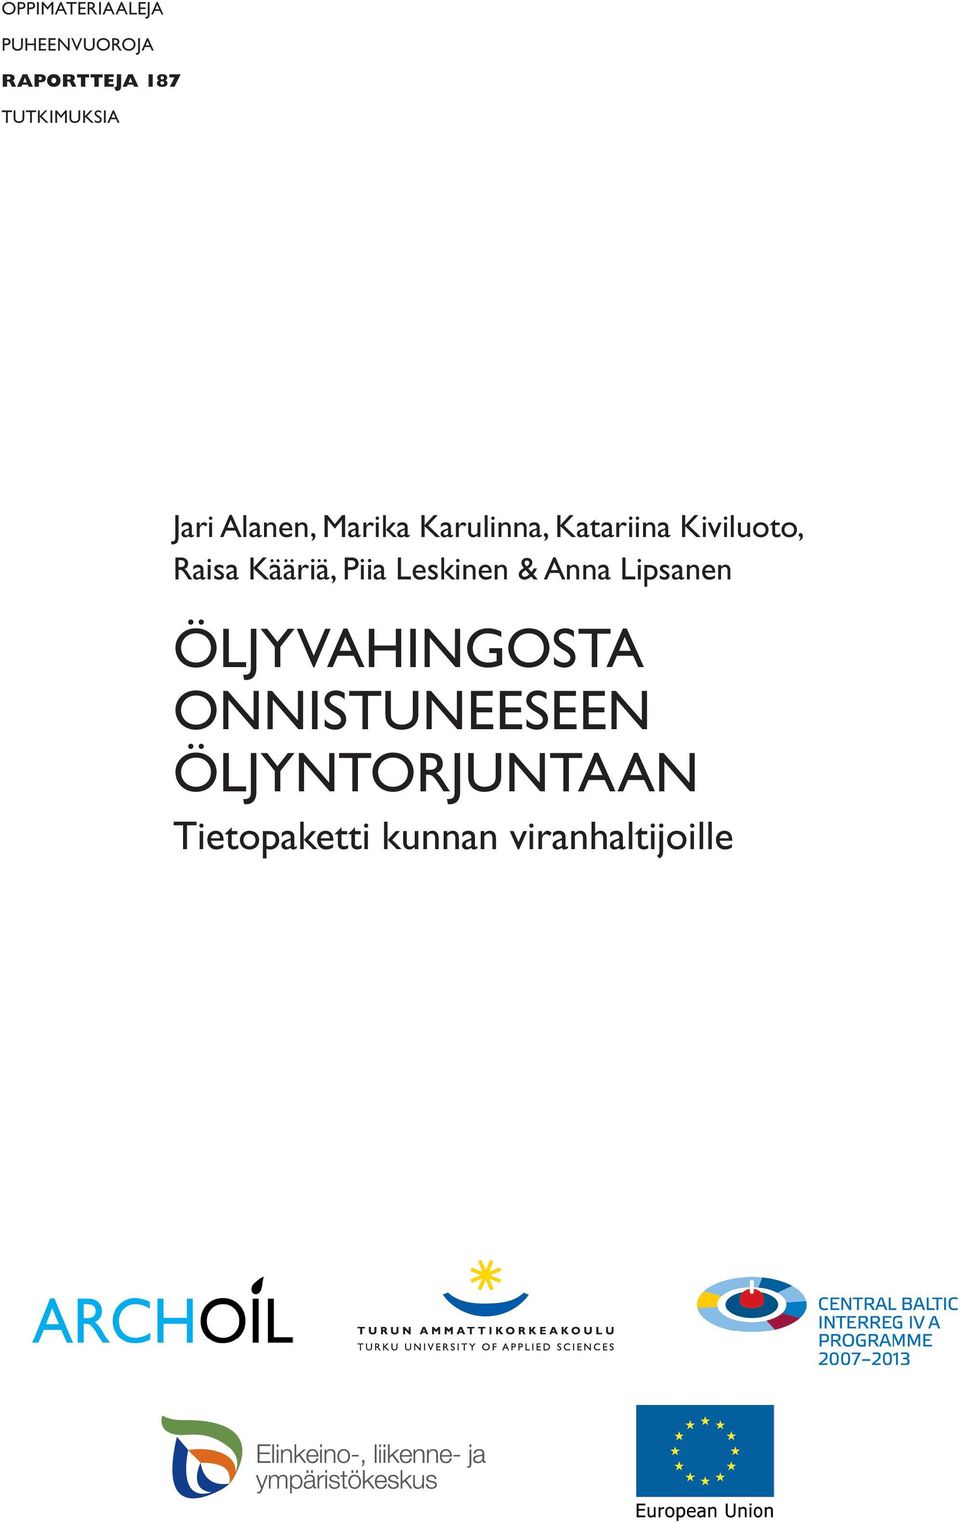 Kääriä, Piia Leskinen & Anna Lipsanen ÖLJYVAHINGOSTA